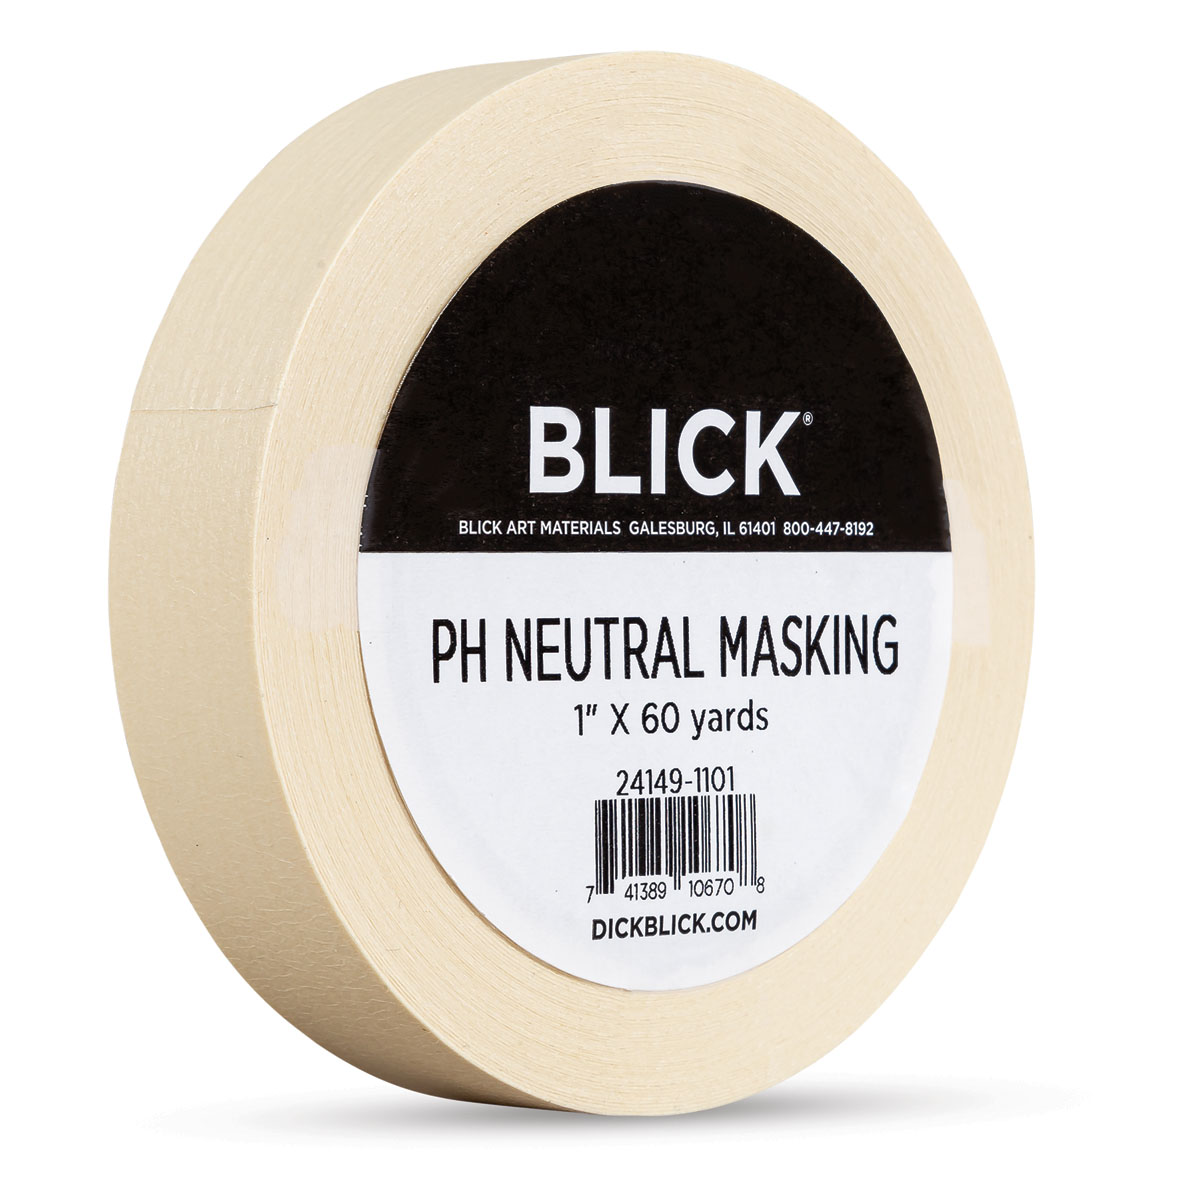 Art Alternatives pH Neutral Black Masking Tape